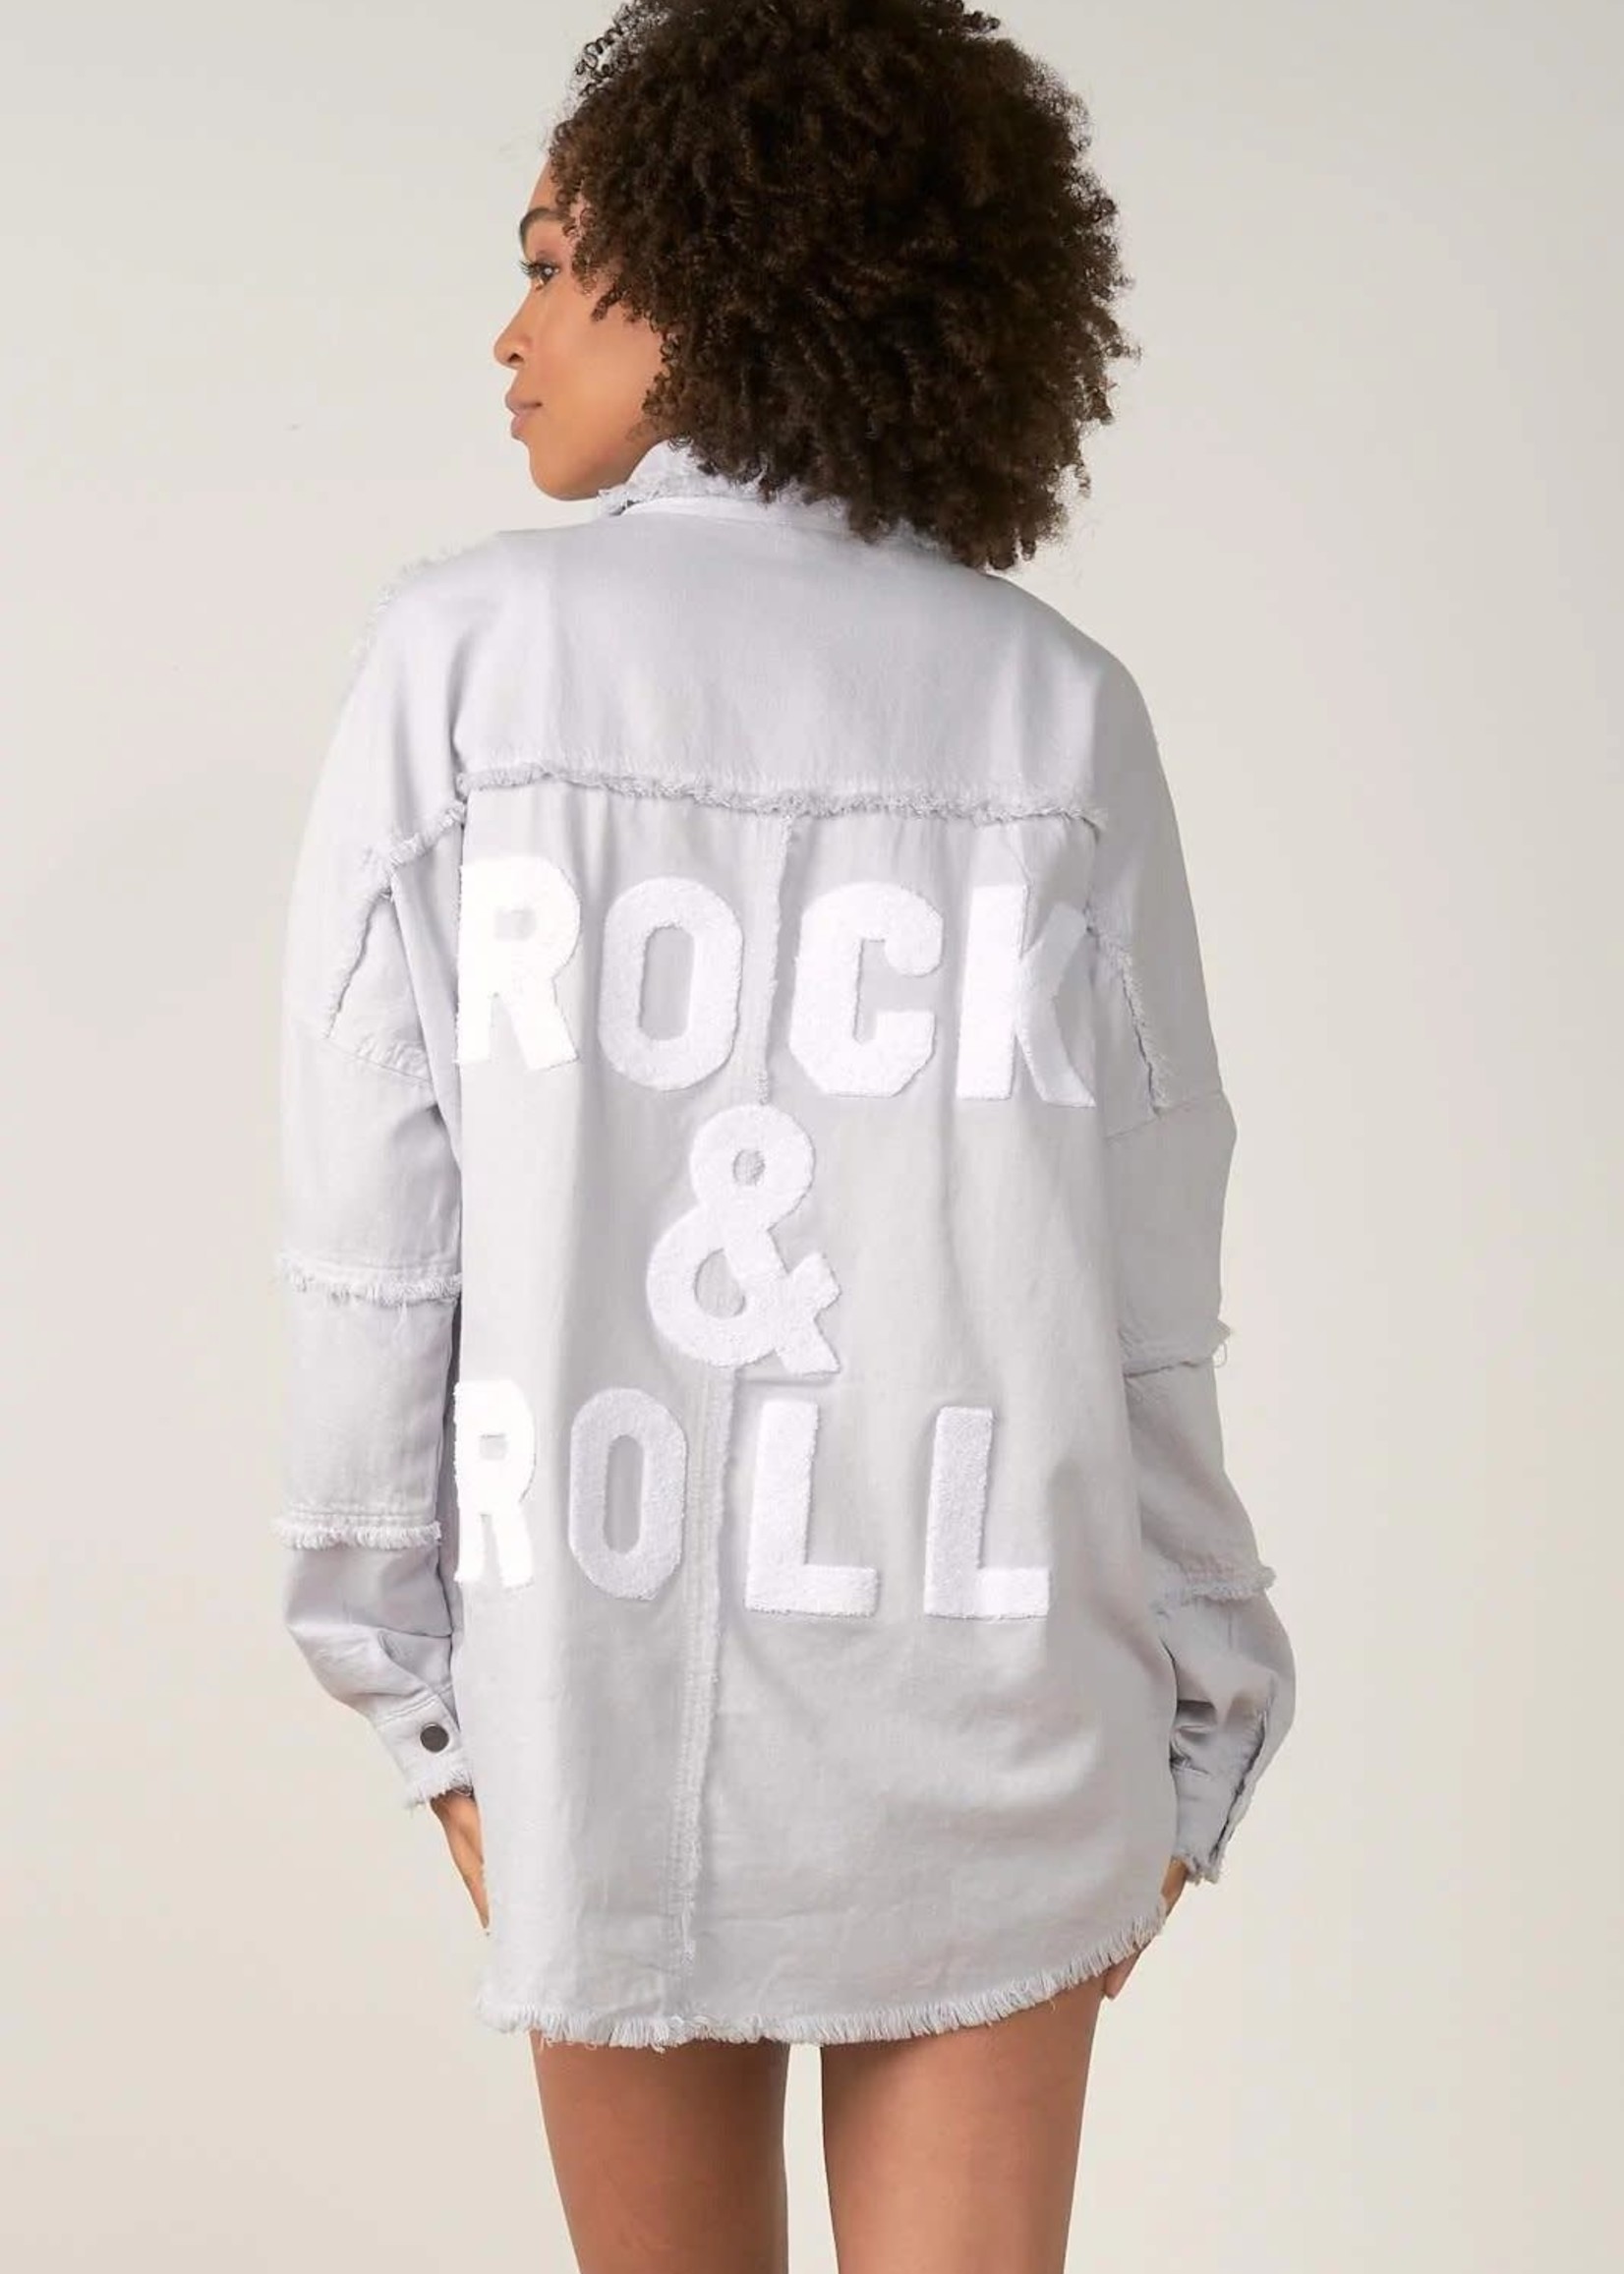 Elan Rock N Roll Jacket